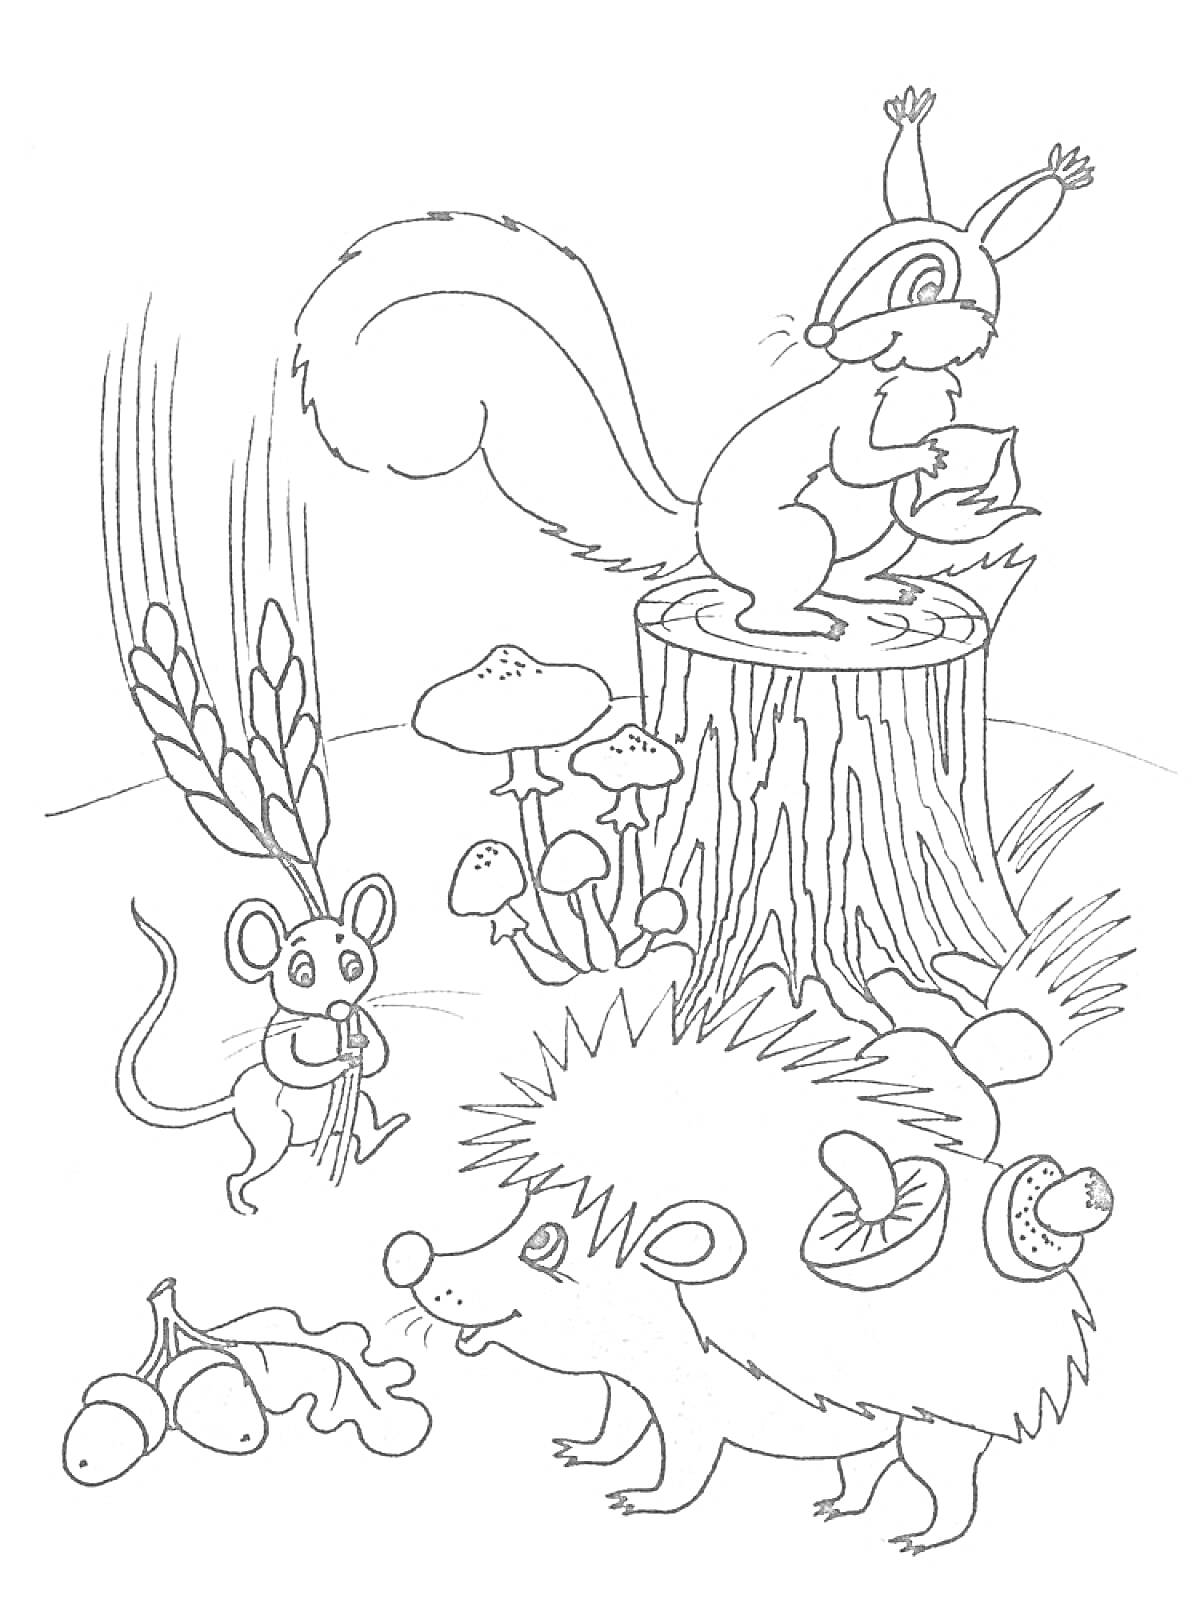 Раскраска Белка на пне, мышка, еж с грибами, колосья, грибы и желуди